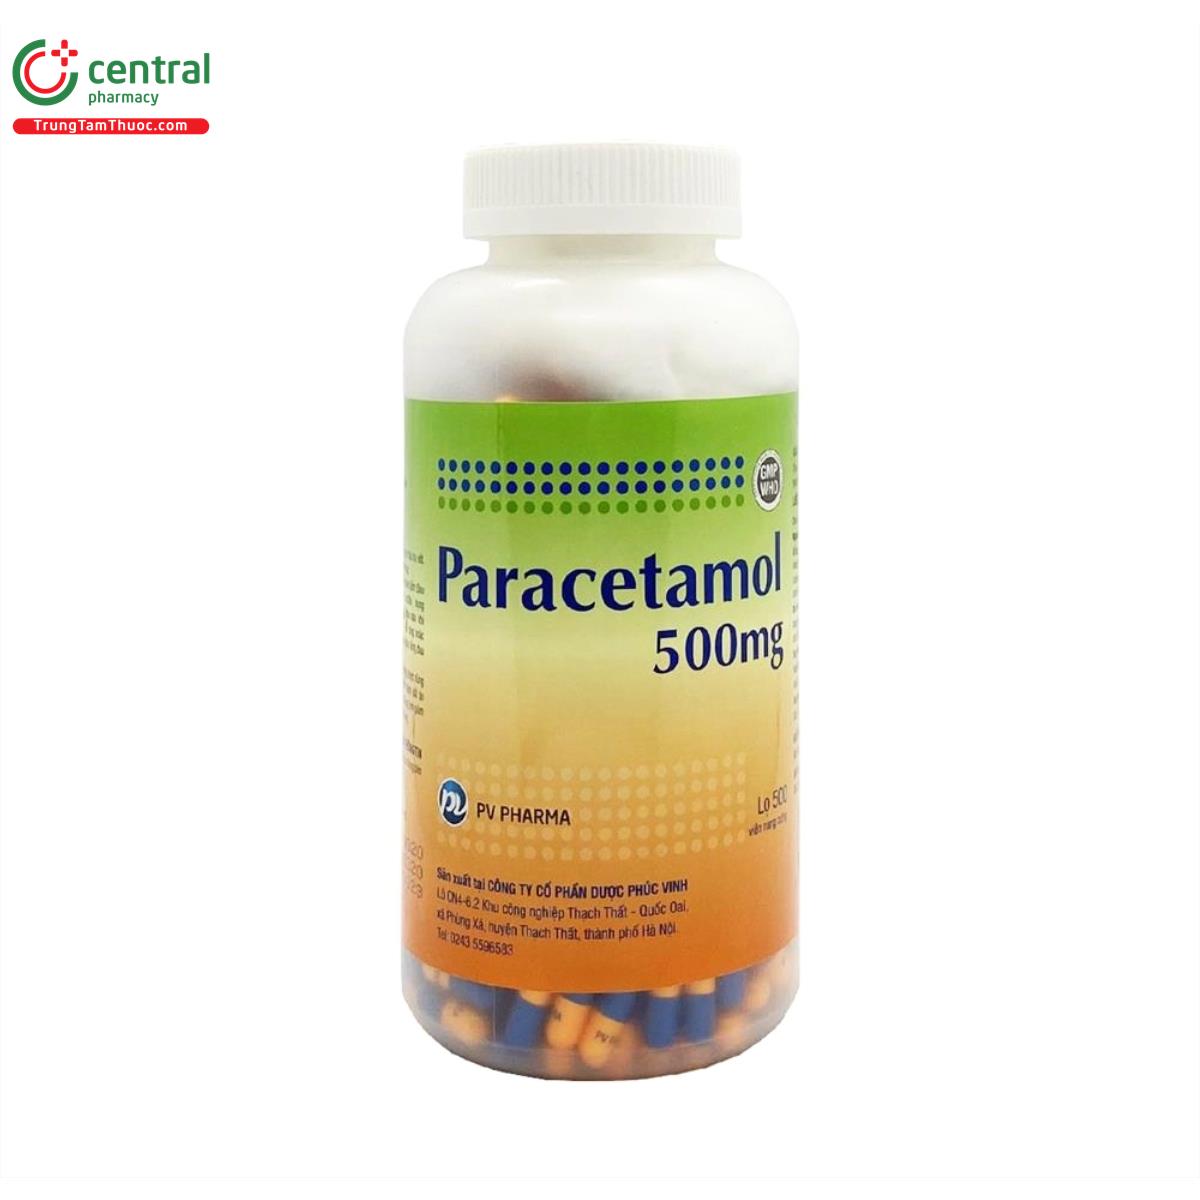 paracetamol 500mg pv pharma 1 Q6183